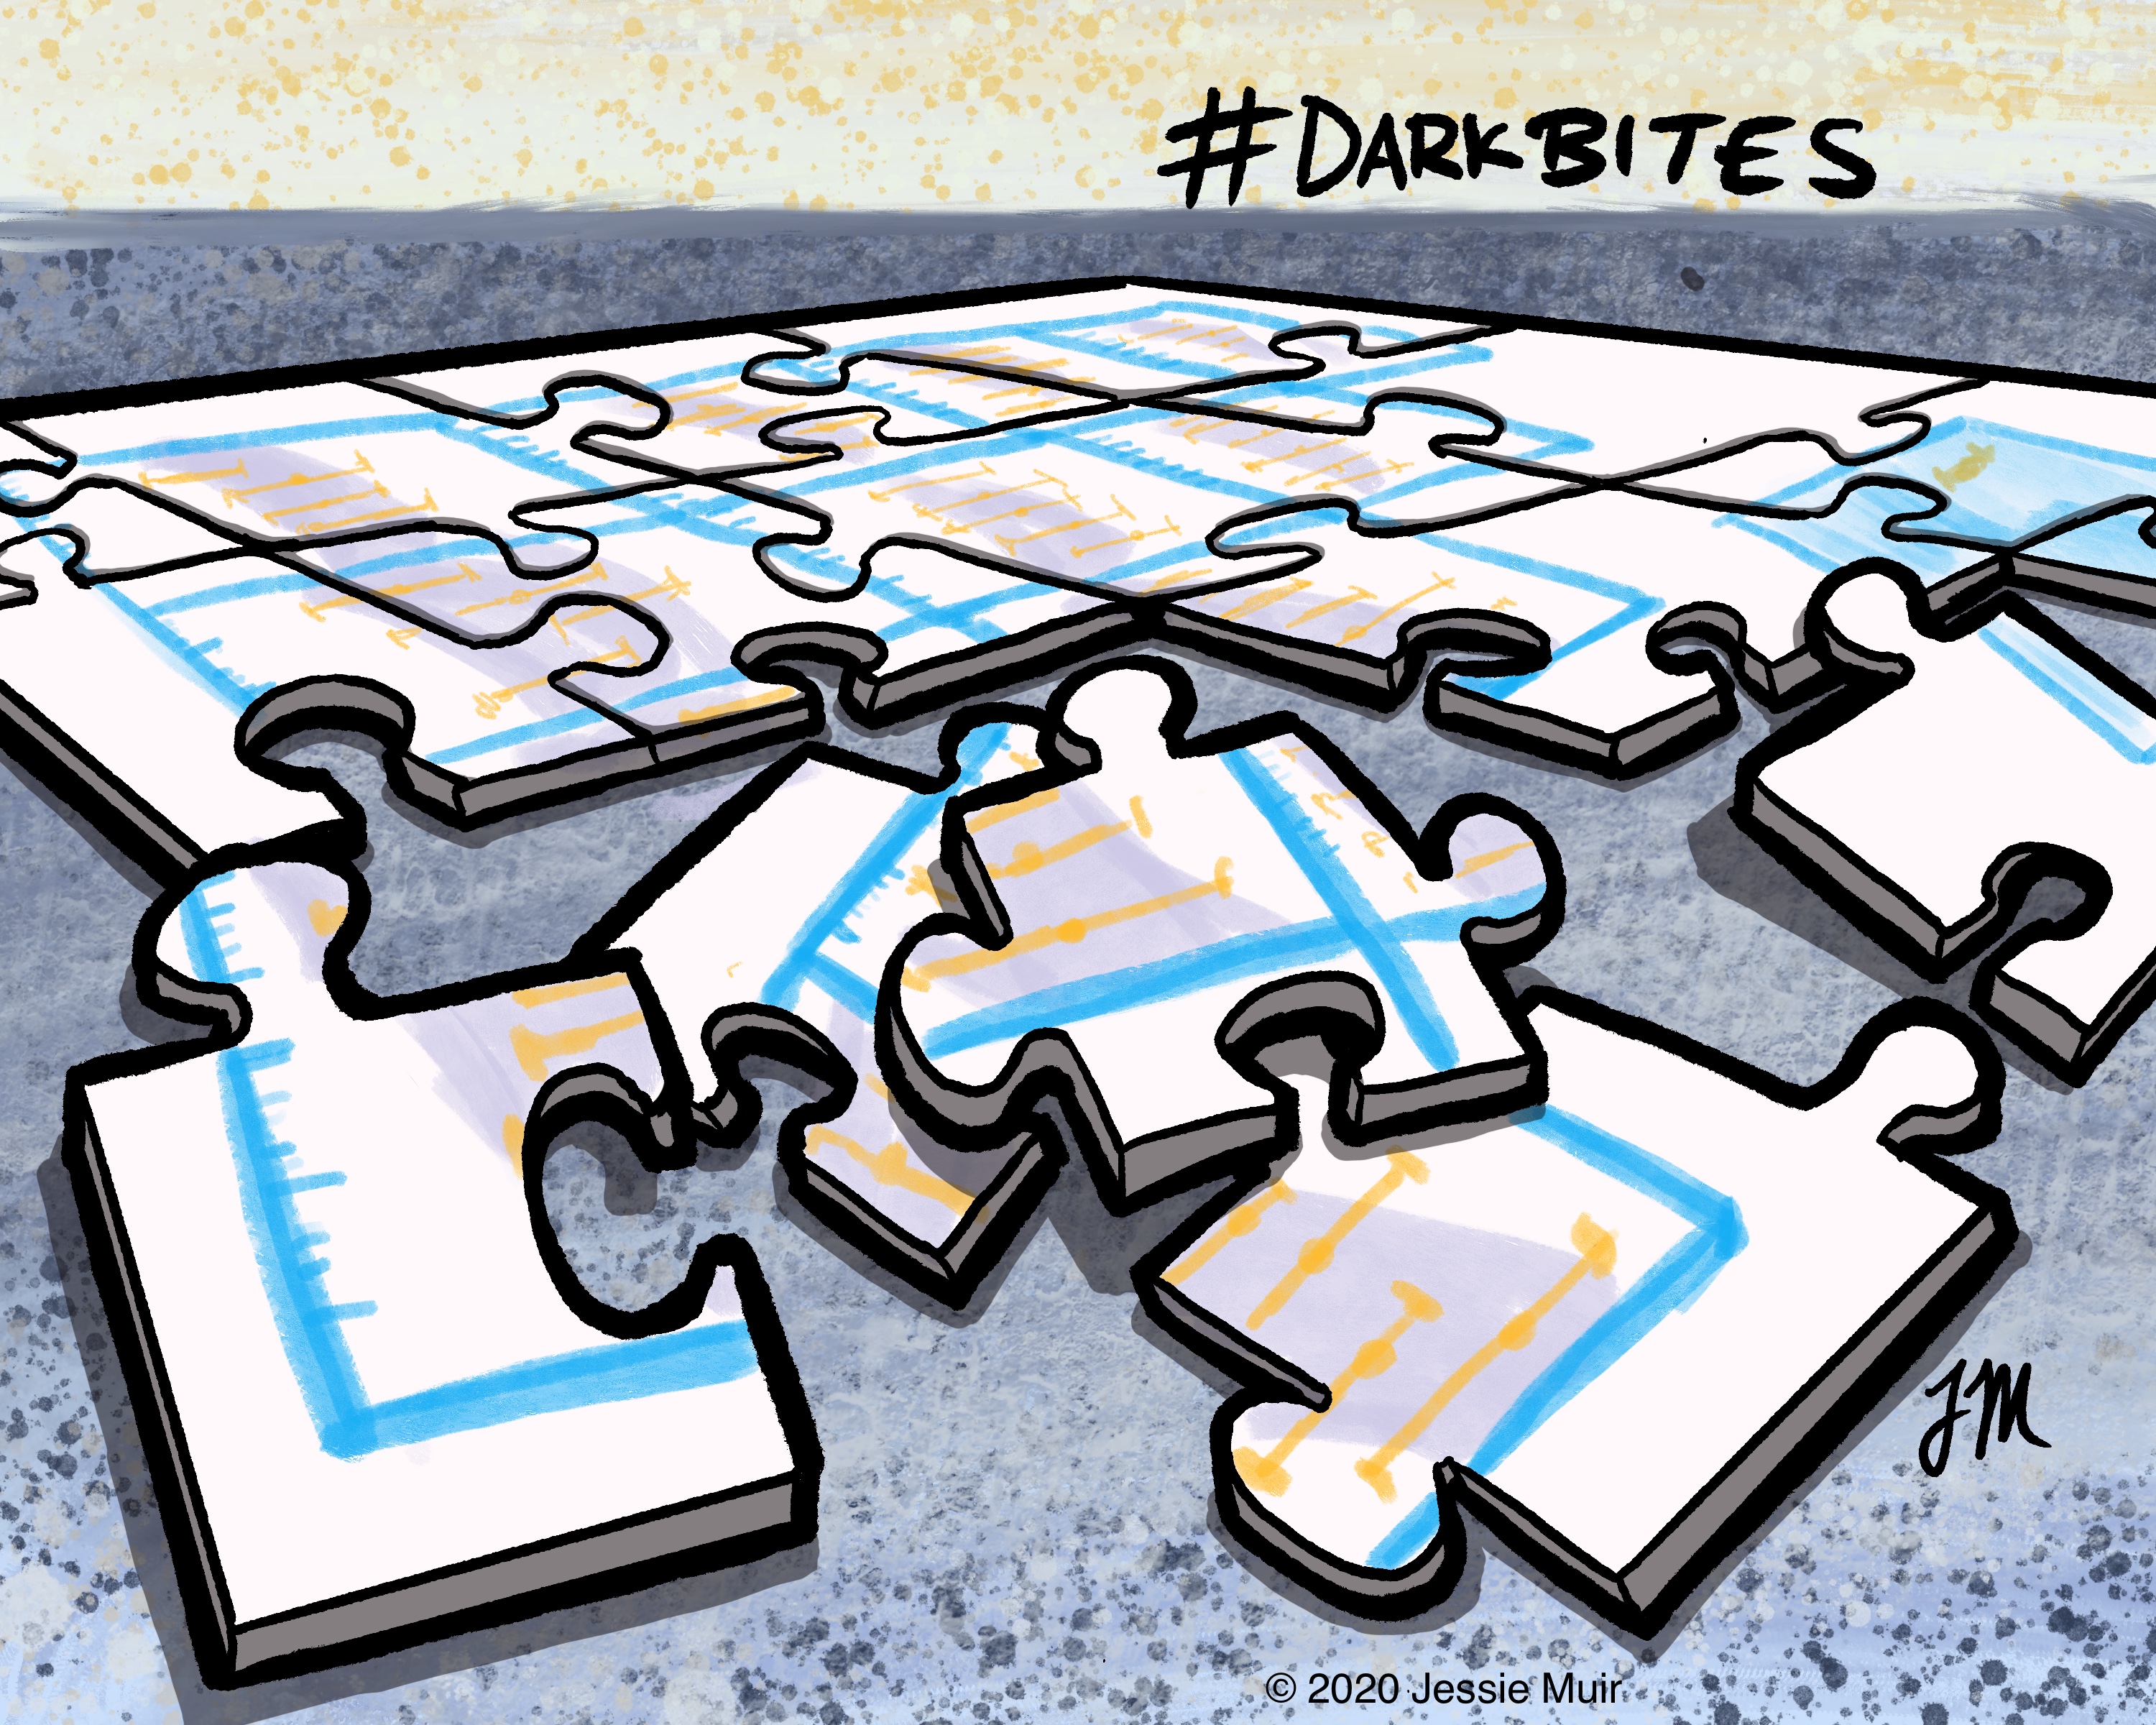 alt="Cartoon of puzzle pieces showing a plot of DES data."